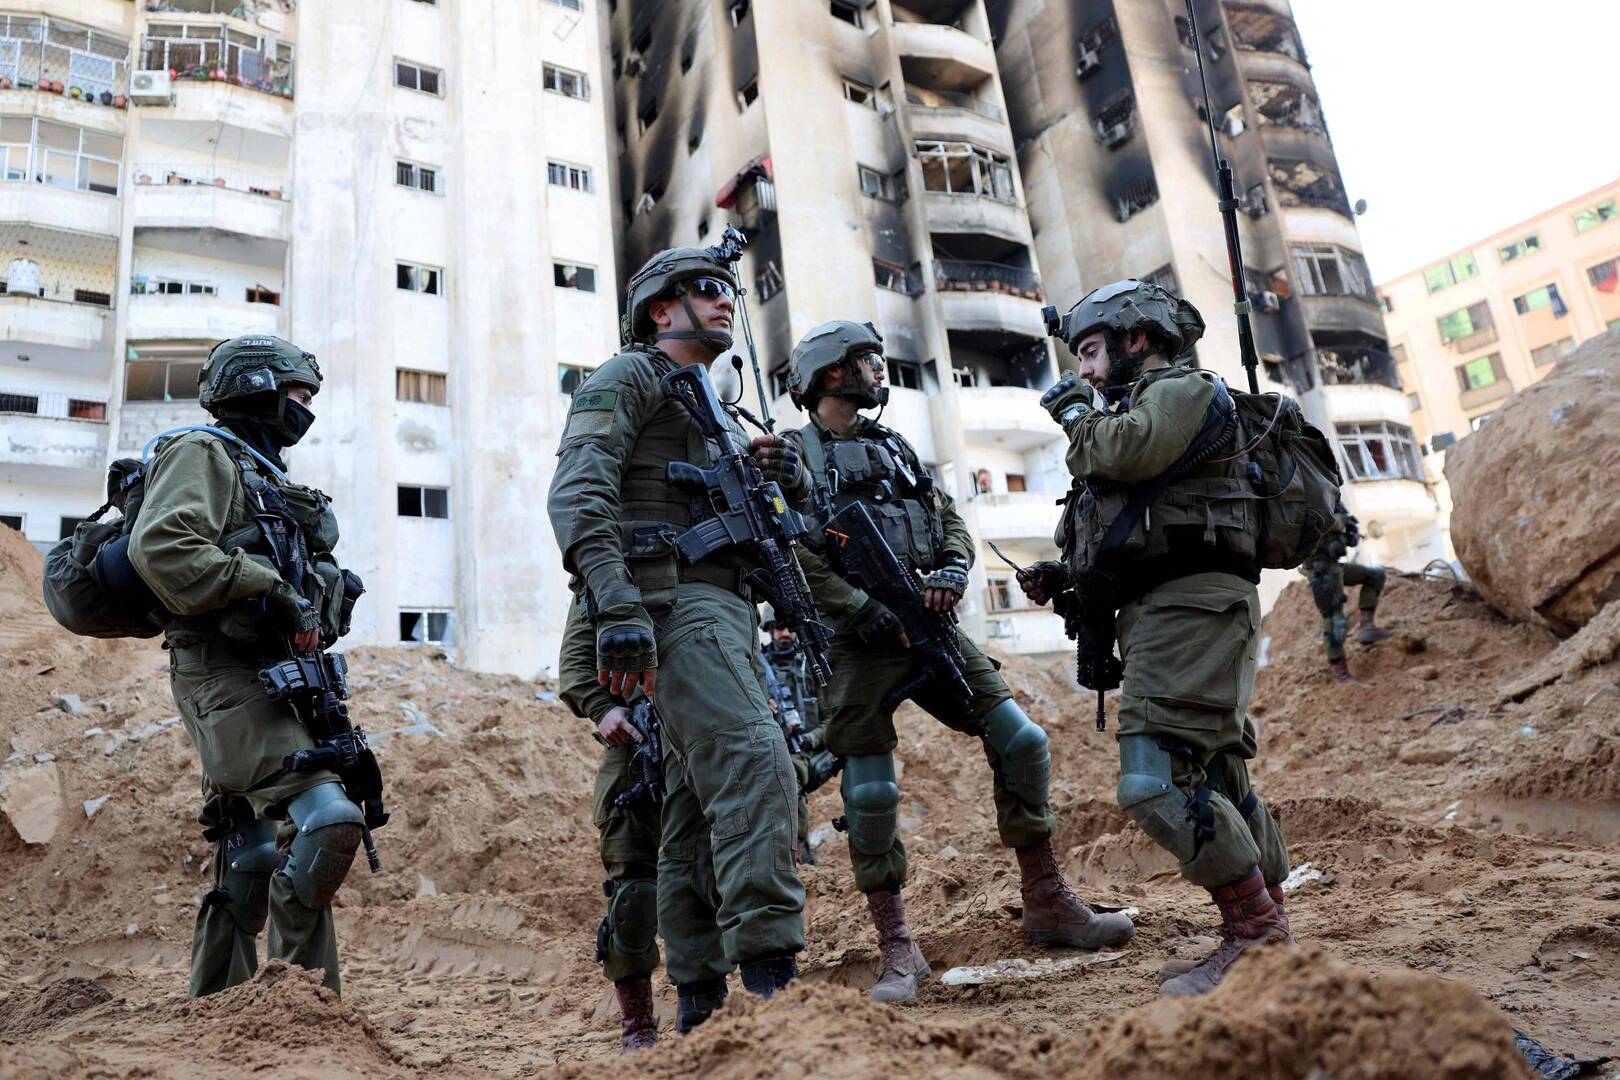 الجيش الإسرائيلي يزعم تمكنه من قتل واحد من "العشرة الأوائل" في كتائب القسام